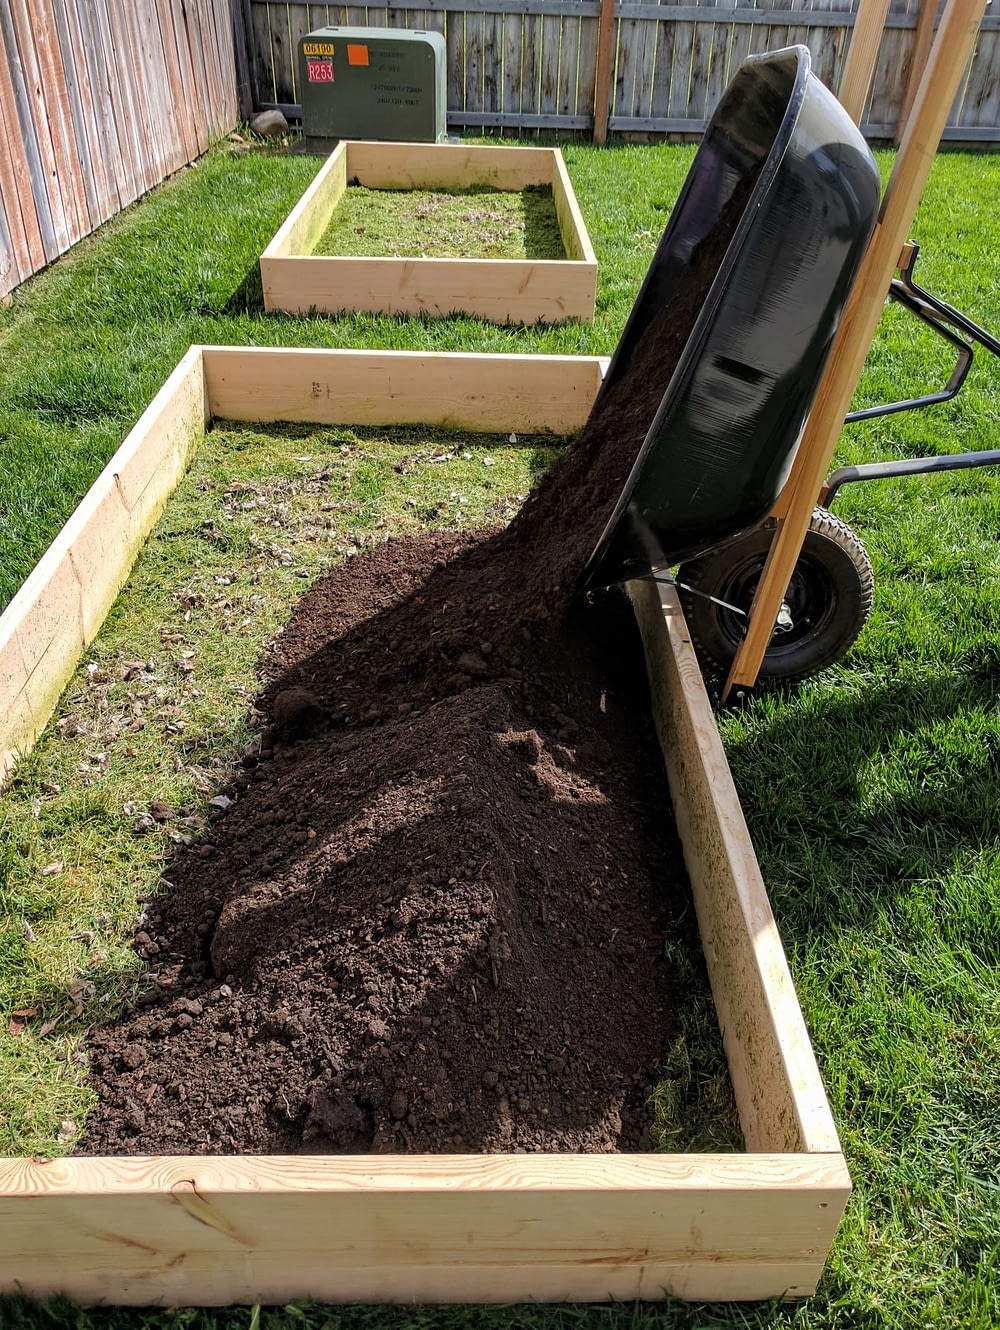 A wheel barrow dumping soil into a raised garden bed